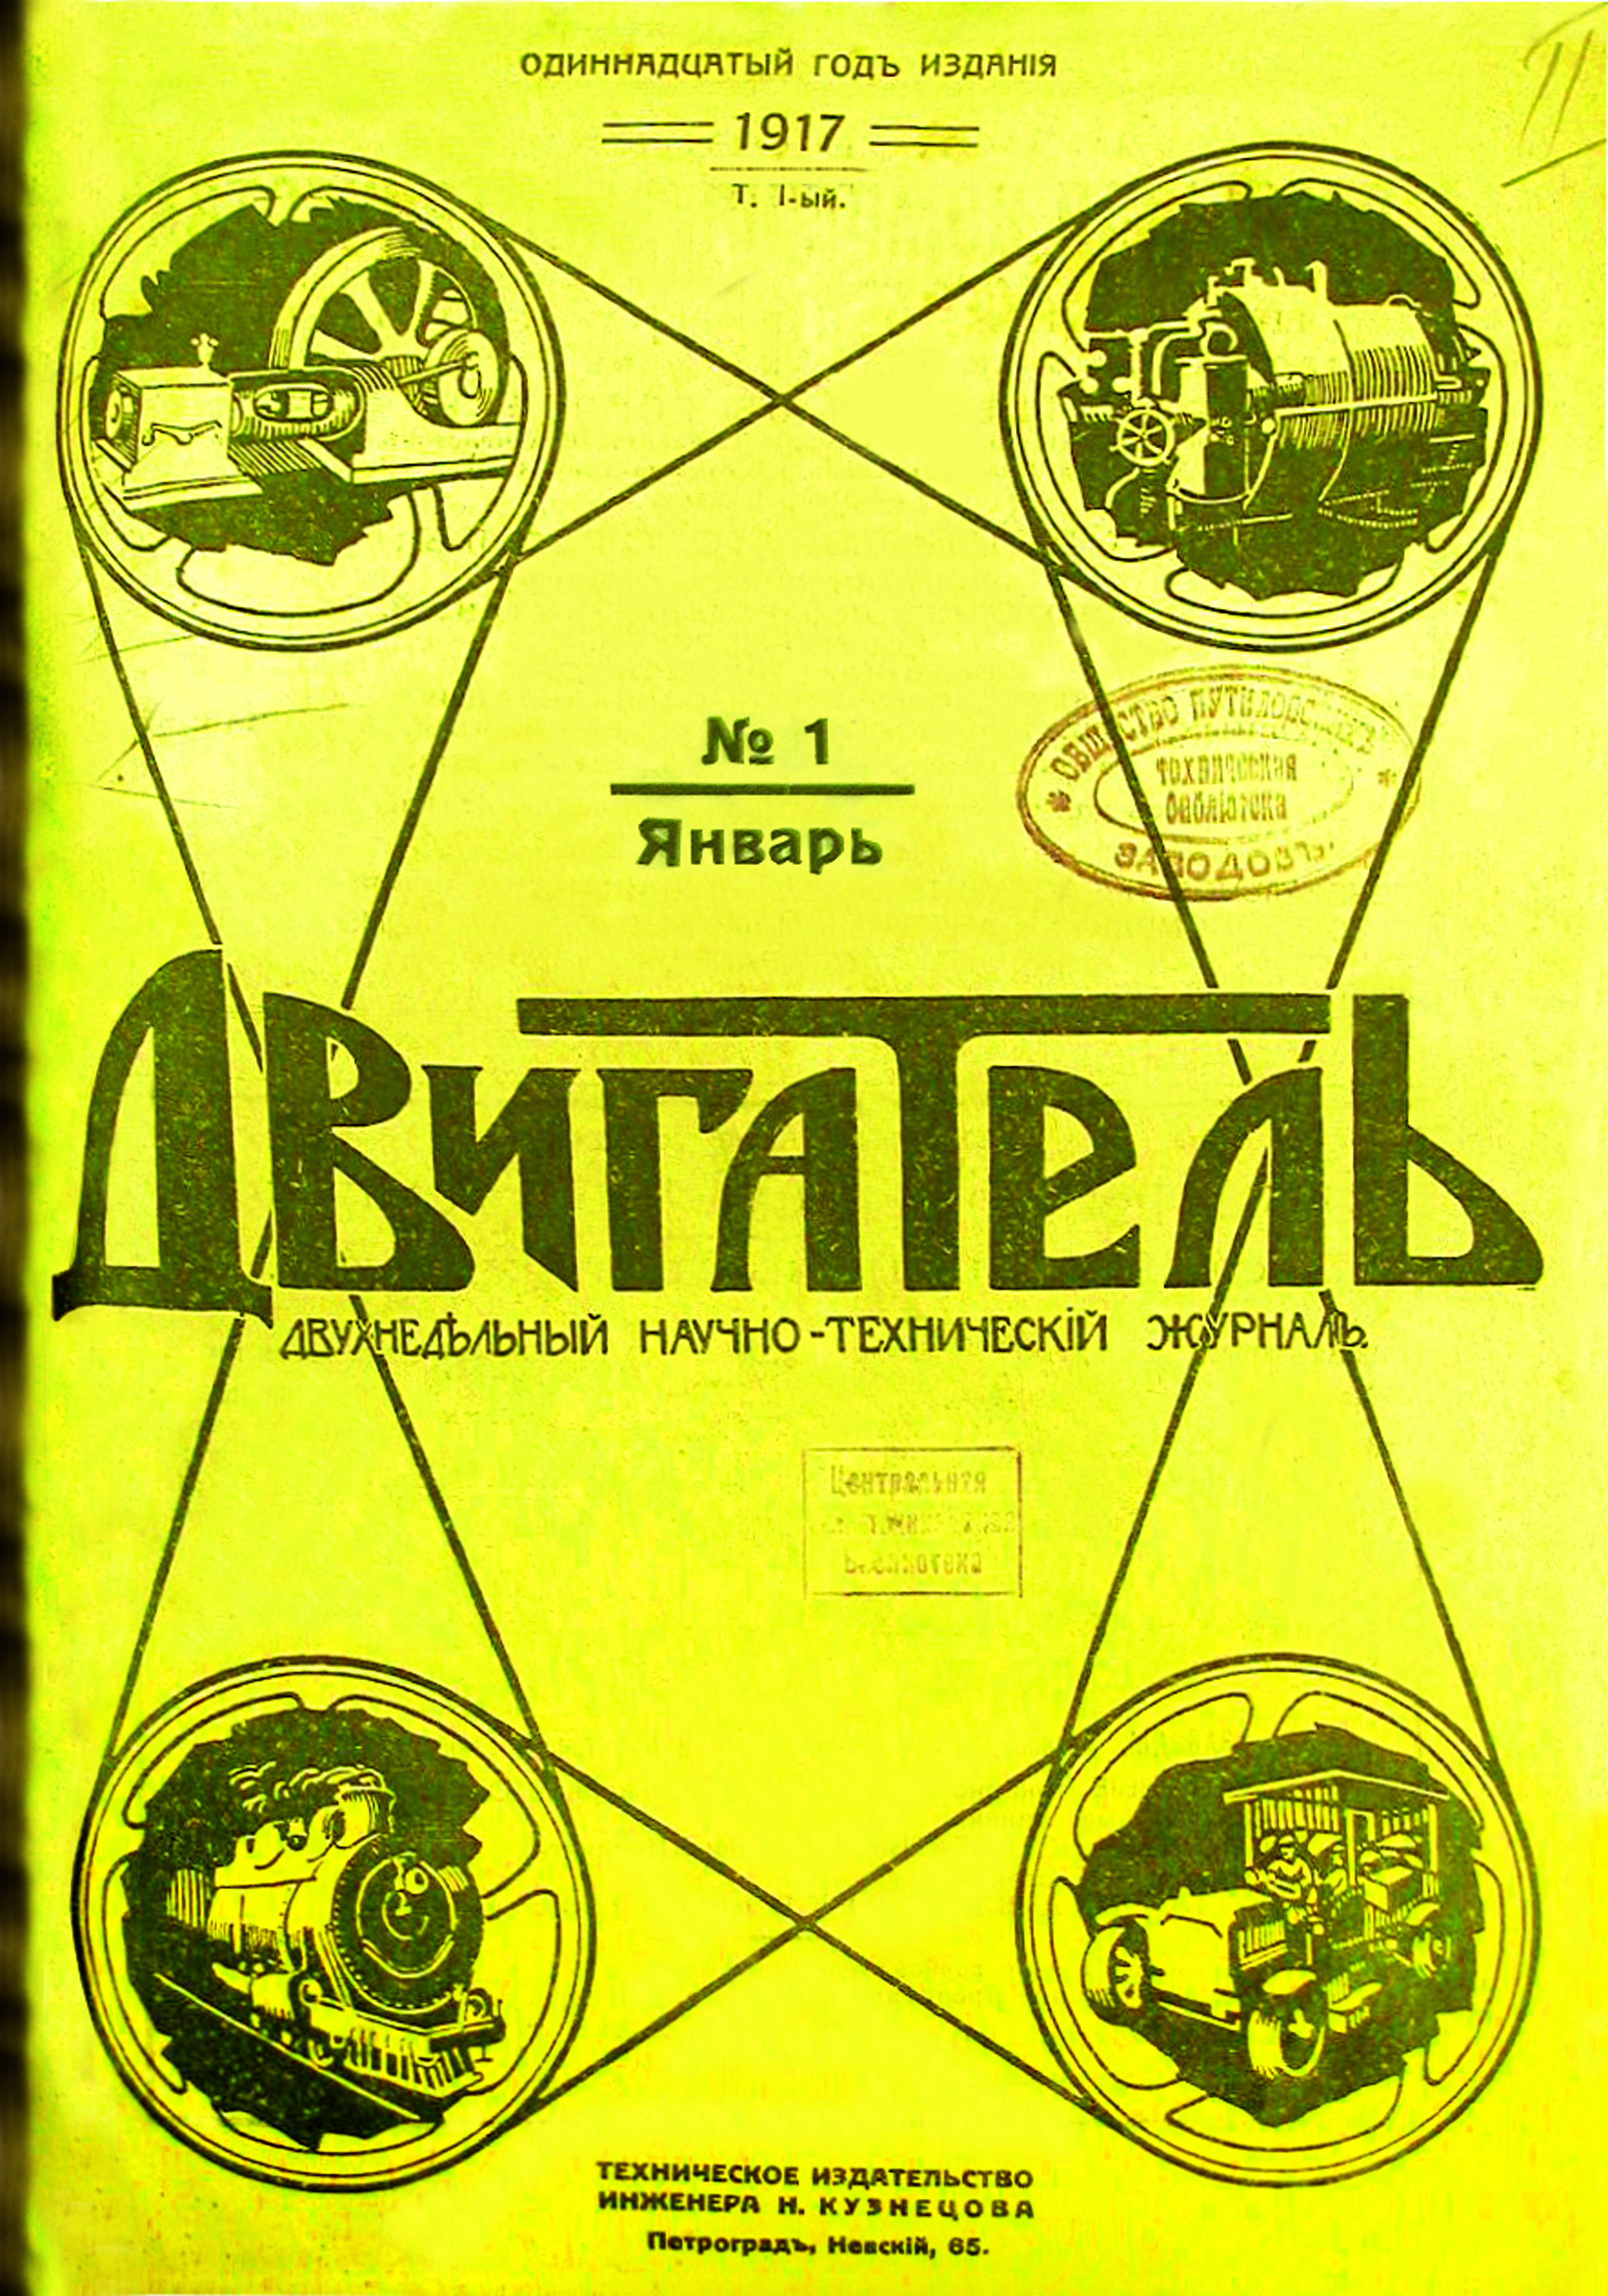 Обложка_1917